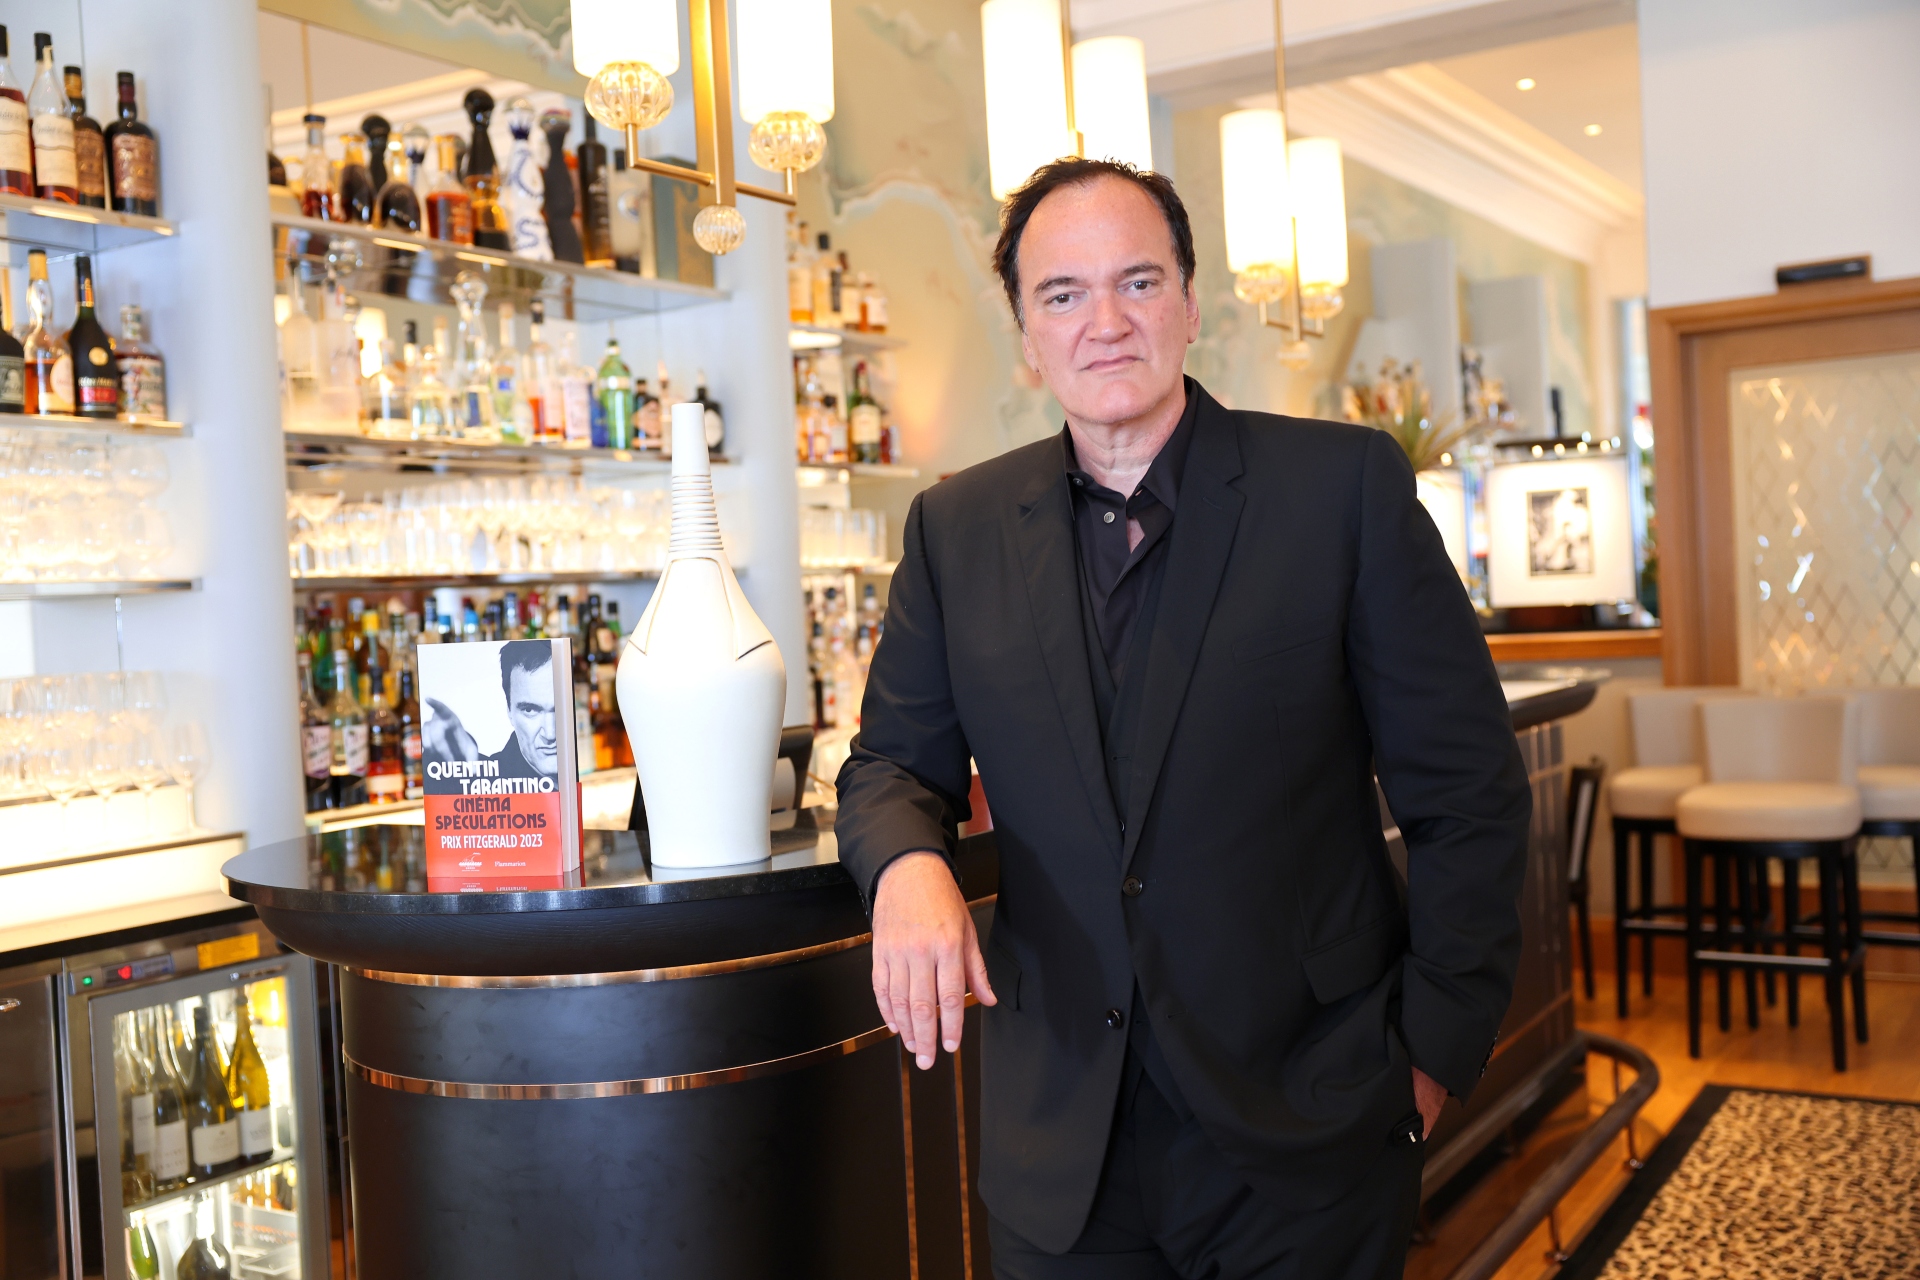 Quentin Tarantino est réputé pour relancer les carrières